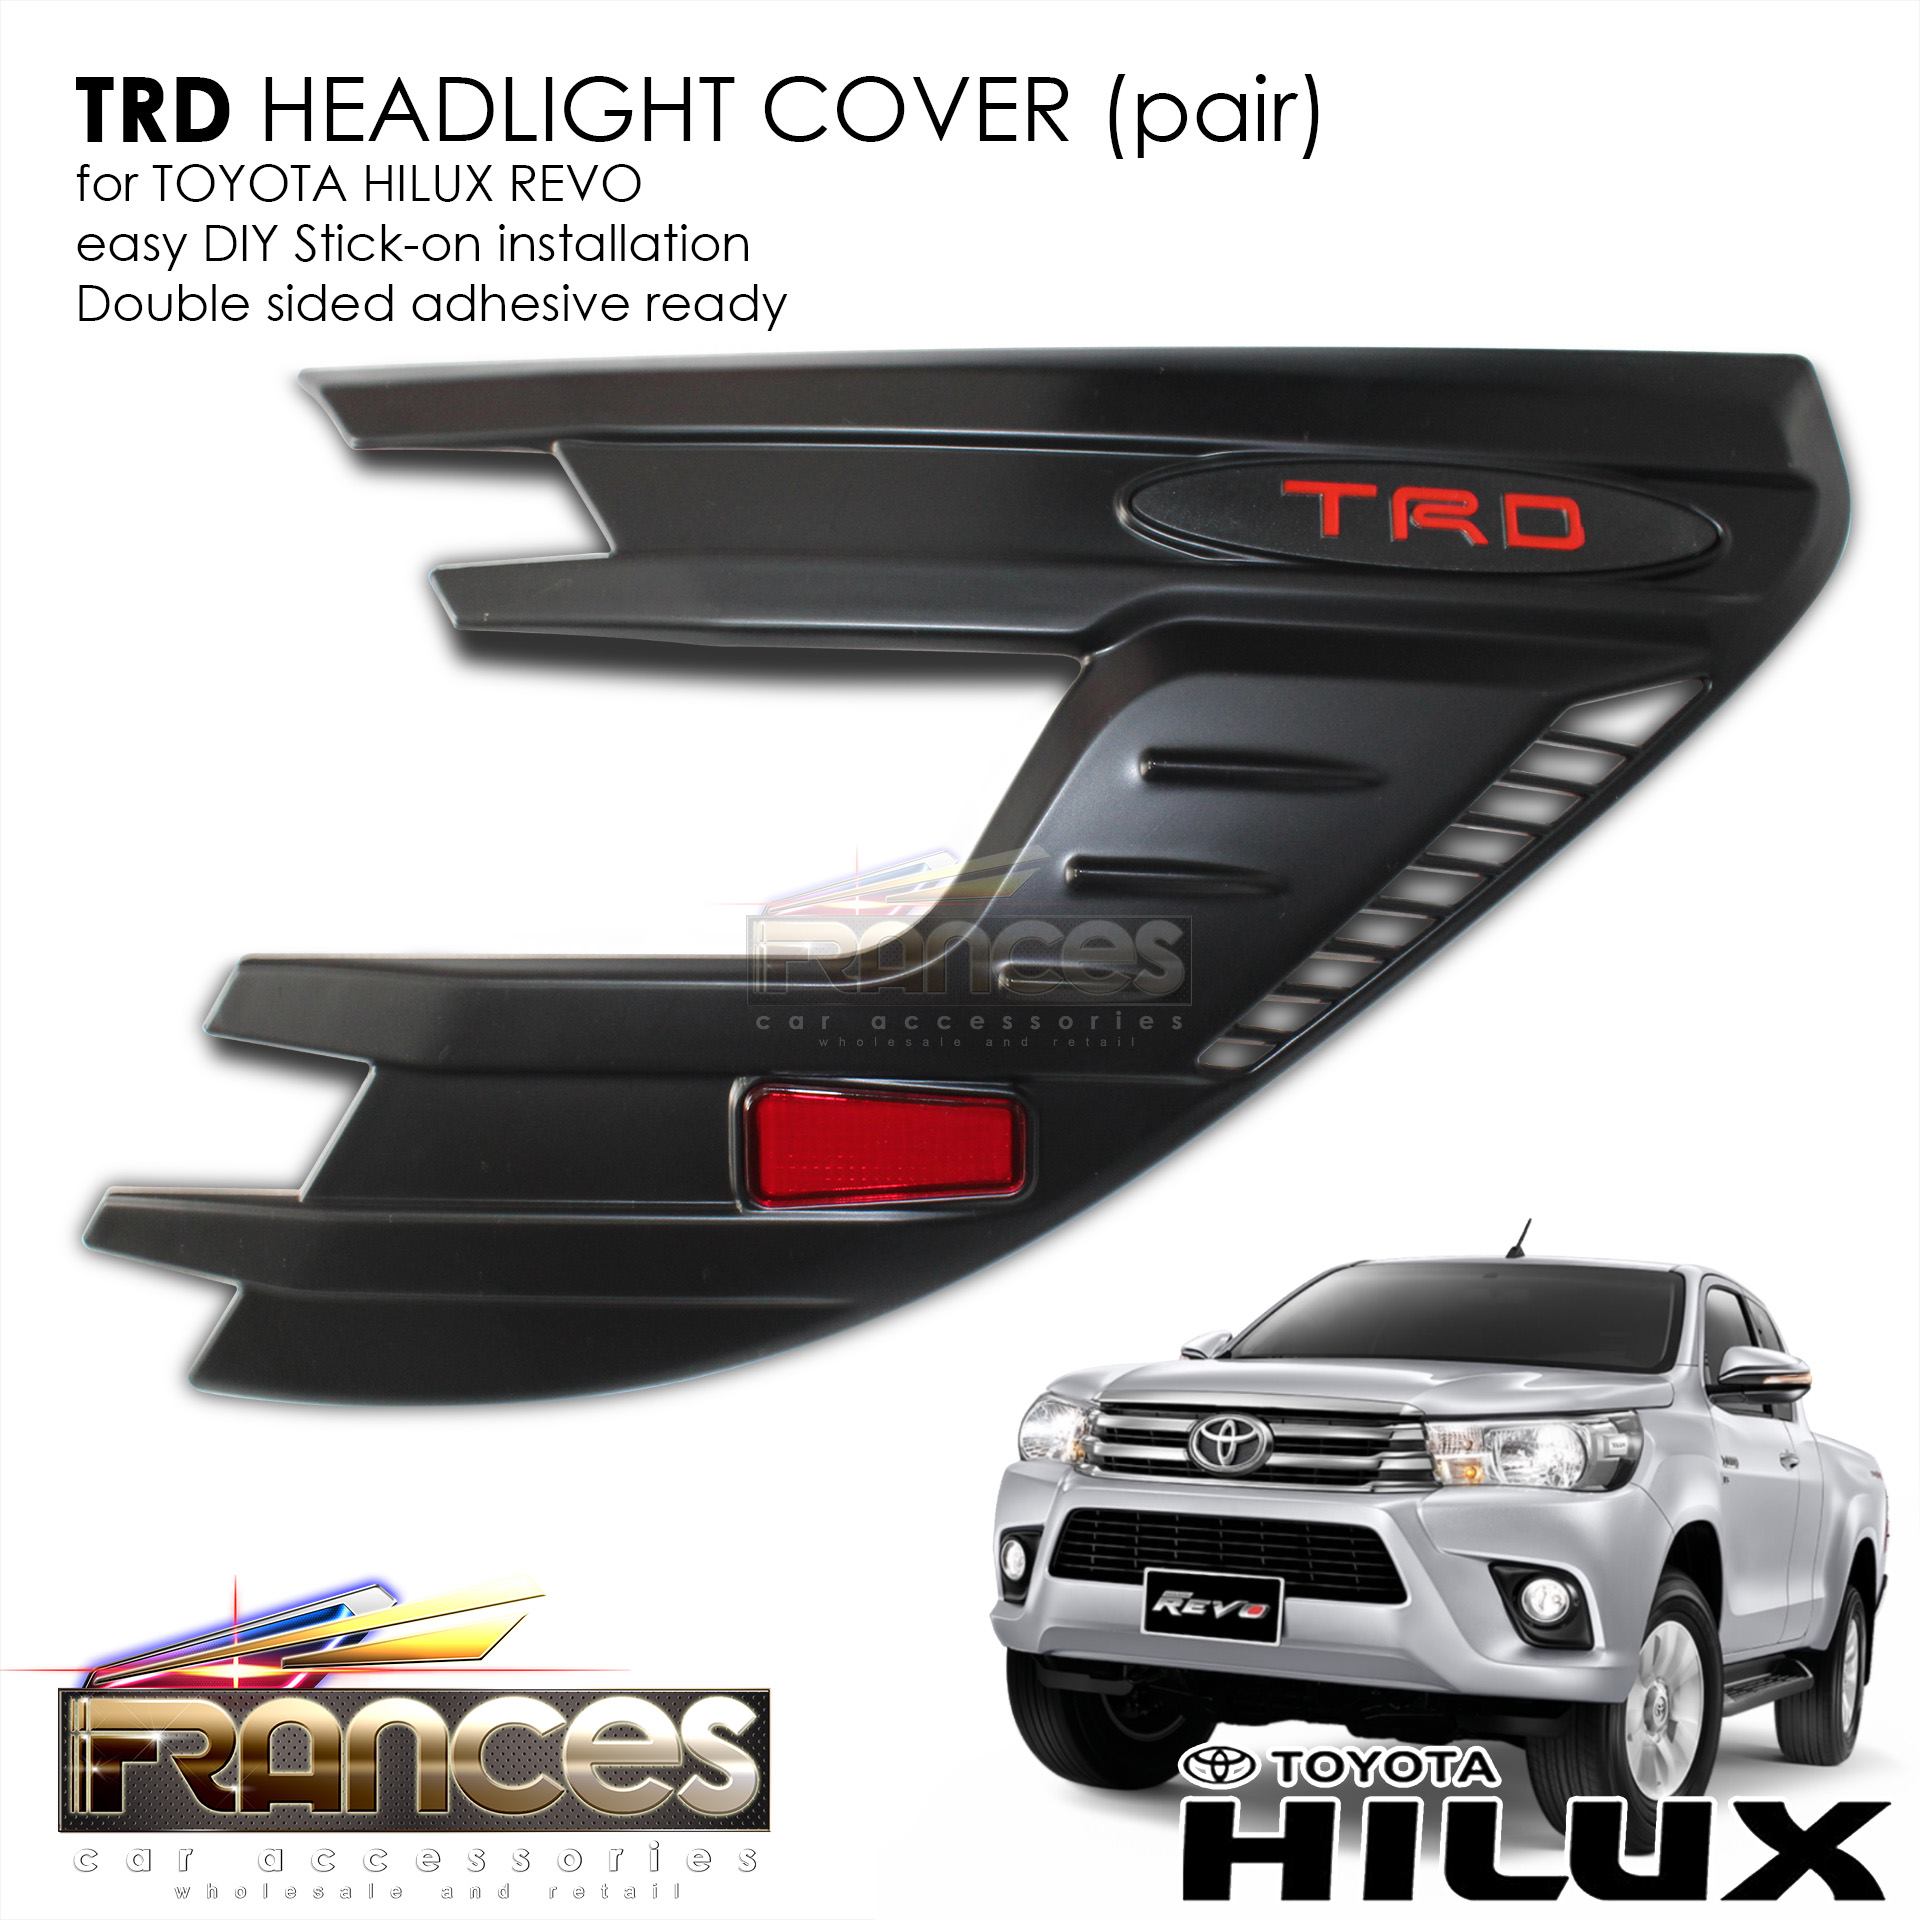 Matt Black Head Light Cover For Toyota Hilux Revo 2015 2016 2017